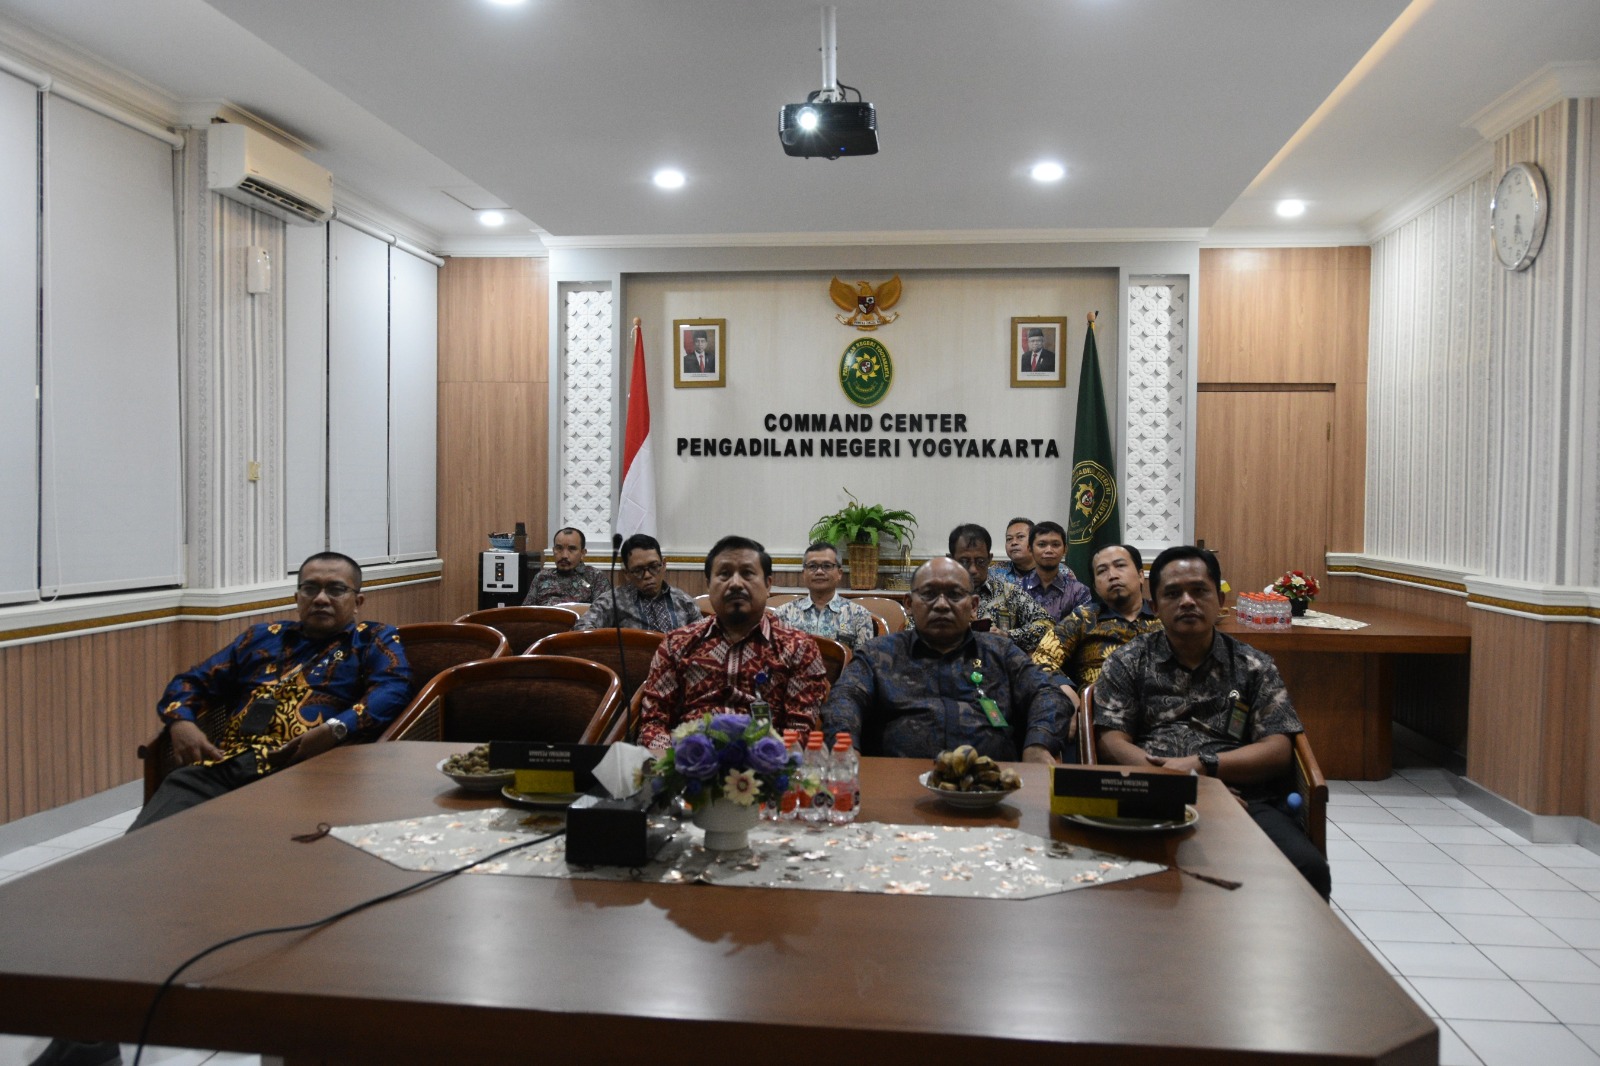 Pengadilan Negeri Yogyakarta Mengikuti Pembinaan Bidang Teknis dan Administrasi Yudisial oleh Pimpinan Mahkamah Agung RI